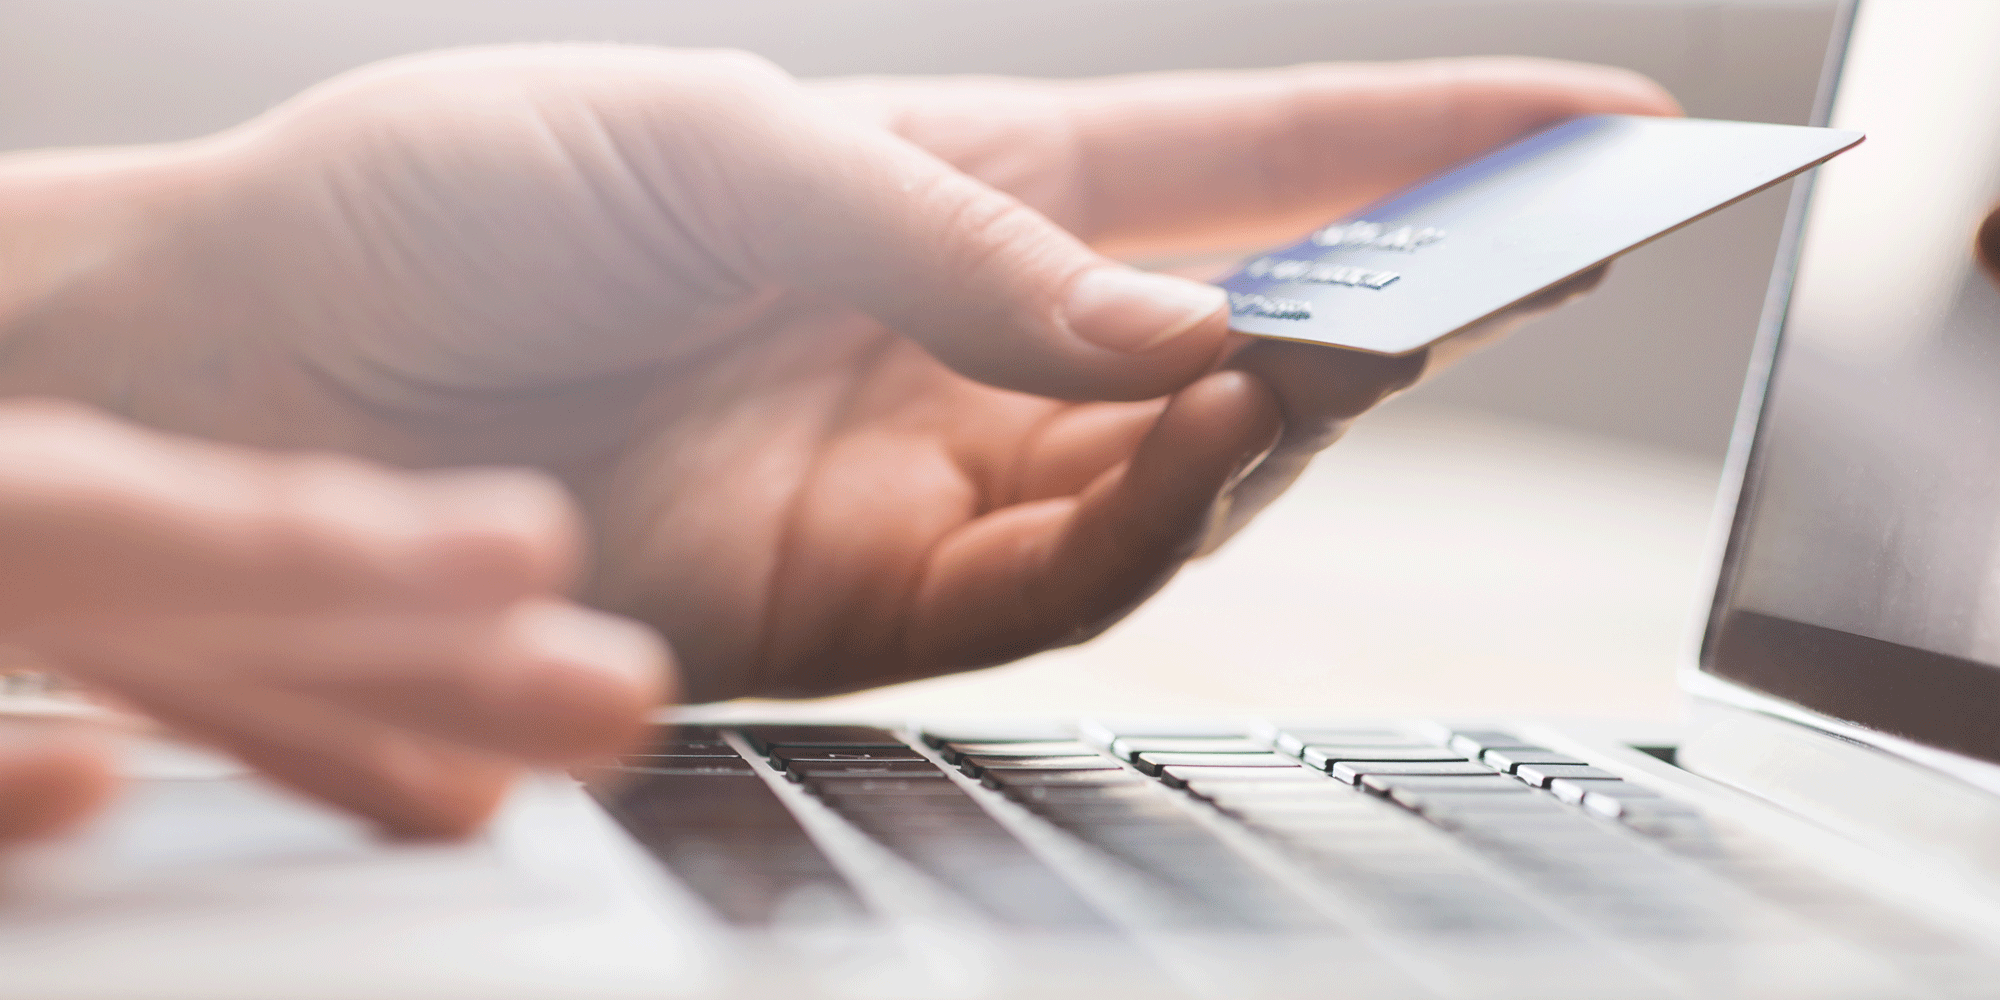 Uso de la tarjeta de credito: Tips para usarla responsablemente